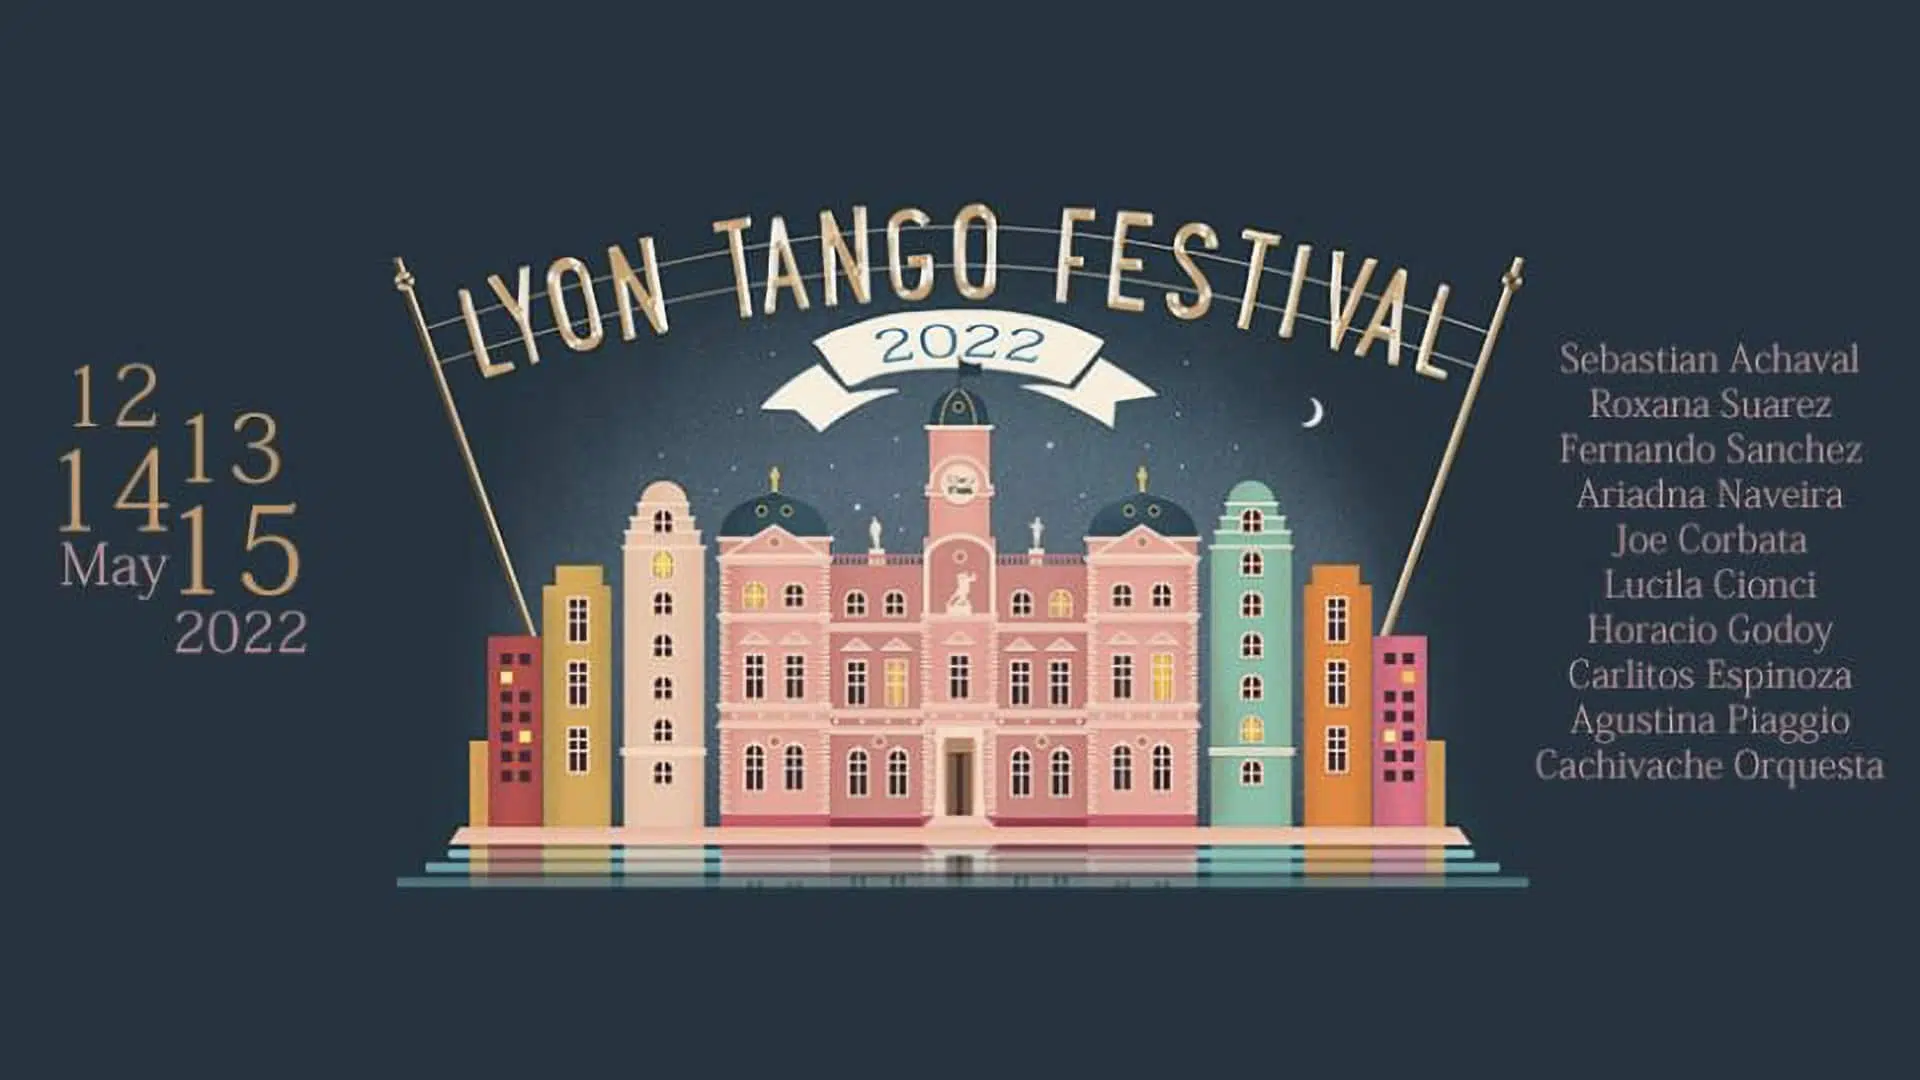 Lyon Tango Festival 2022 Preview Image